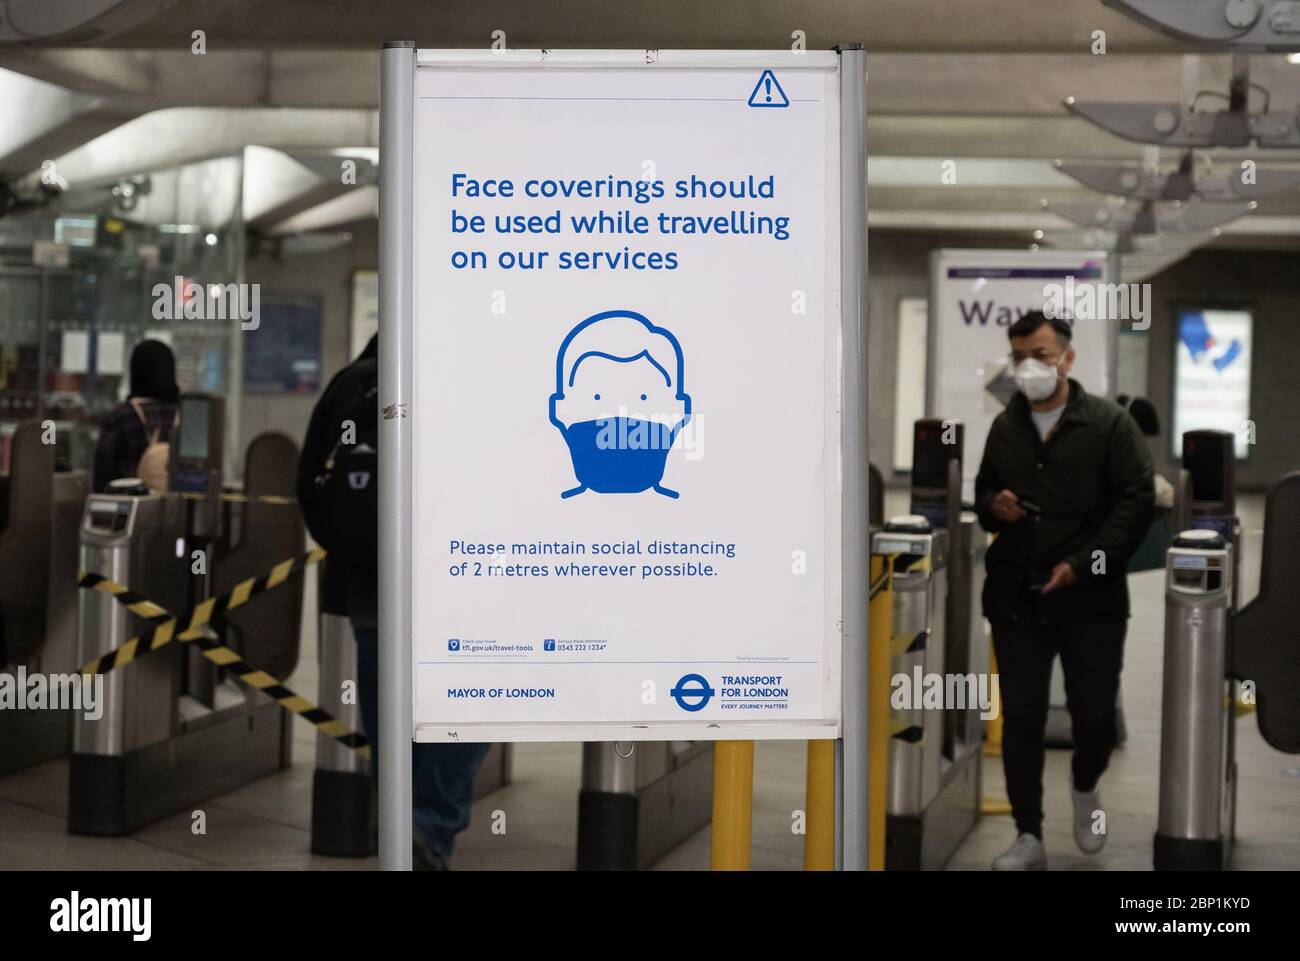 Des affiches et des autocollants sur le métro de Londres rappellent aux gens de porter des revêtements de visage et de distance sociale sur les transports publics. Westminster Undergro Banque D'Images